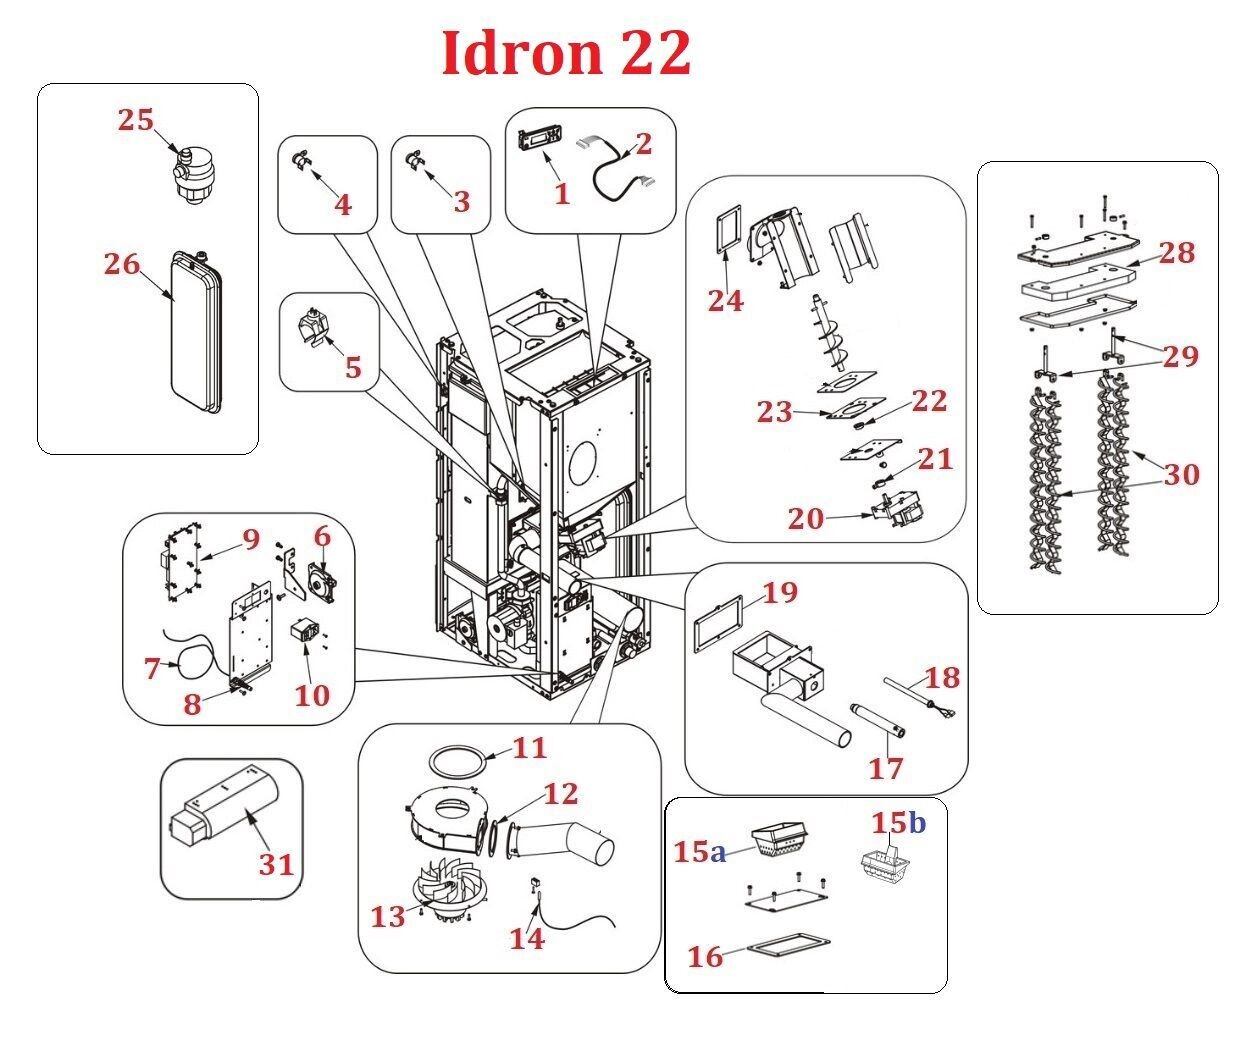 Idron 22